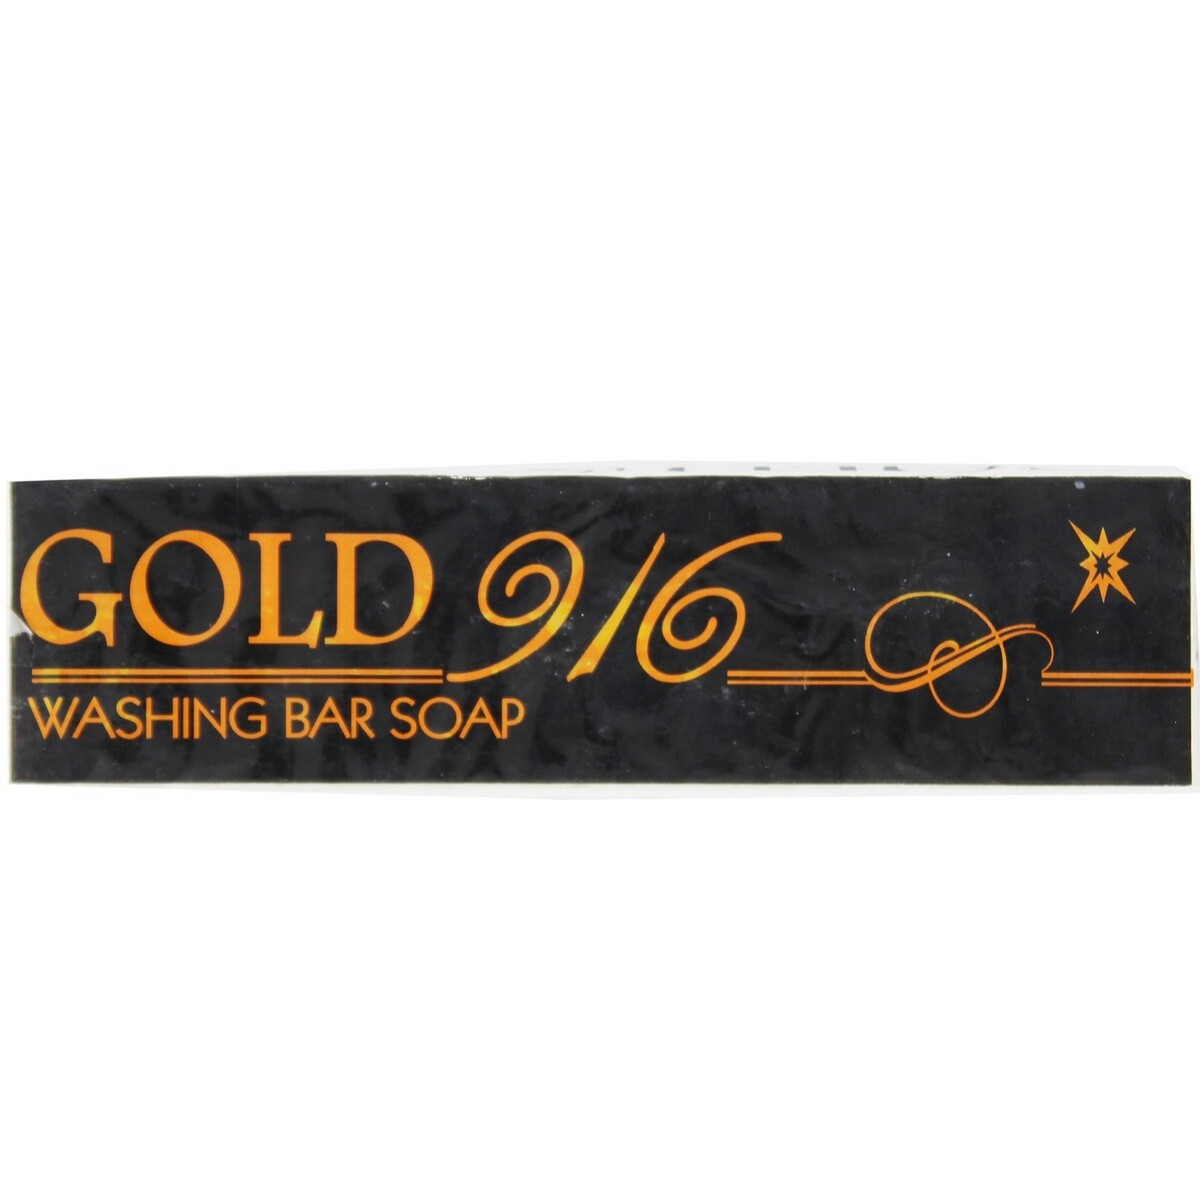 Gold 916 Washing Bar Soap 400g